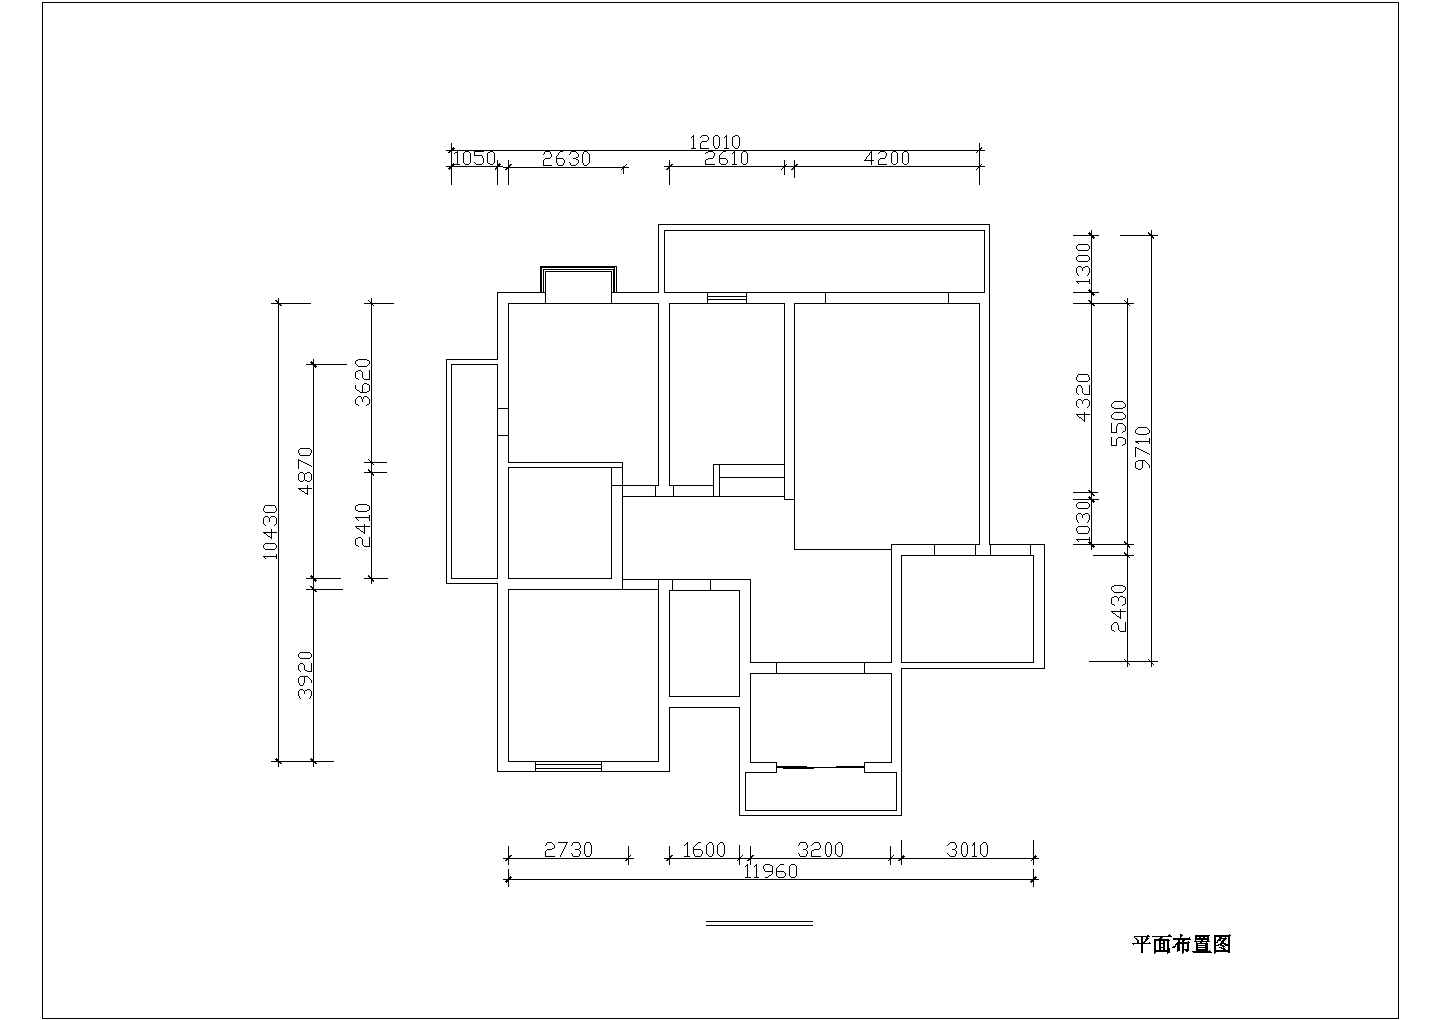 复旦科技园人才公寓内130平米室内家装设计cad方案施工图布置图